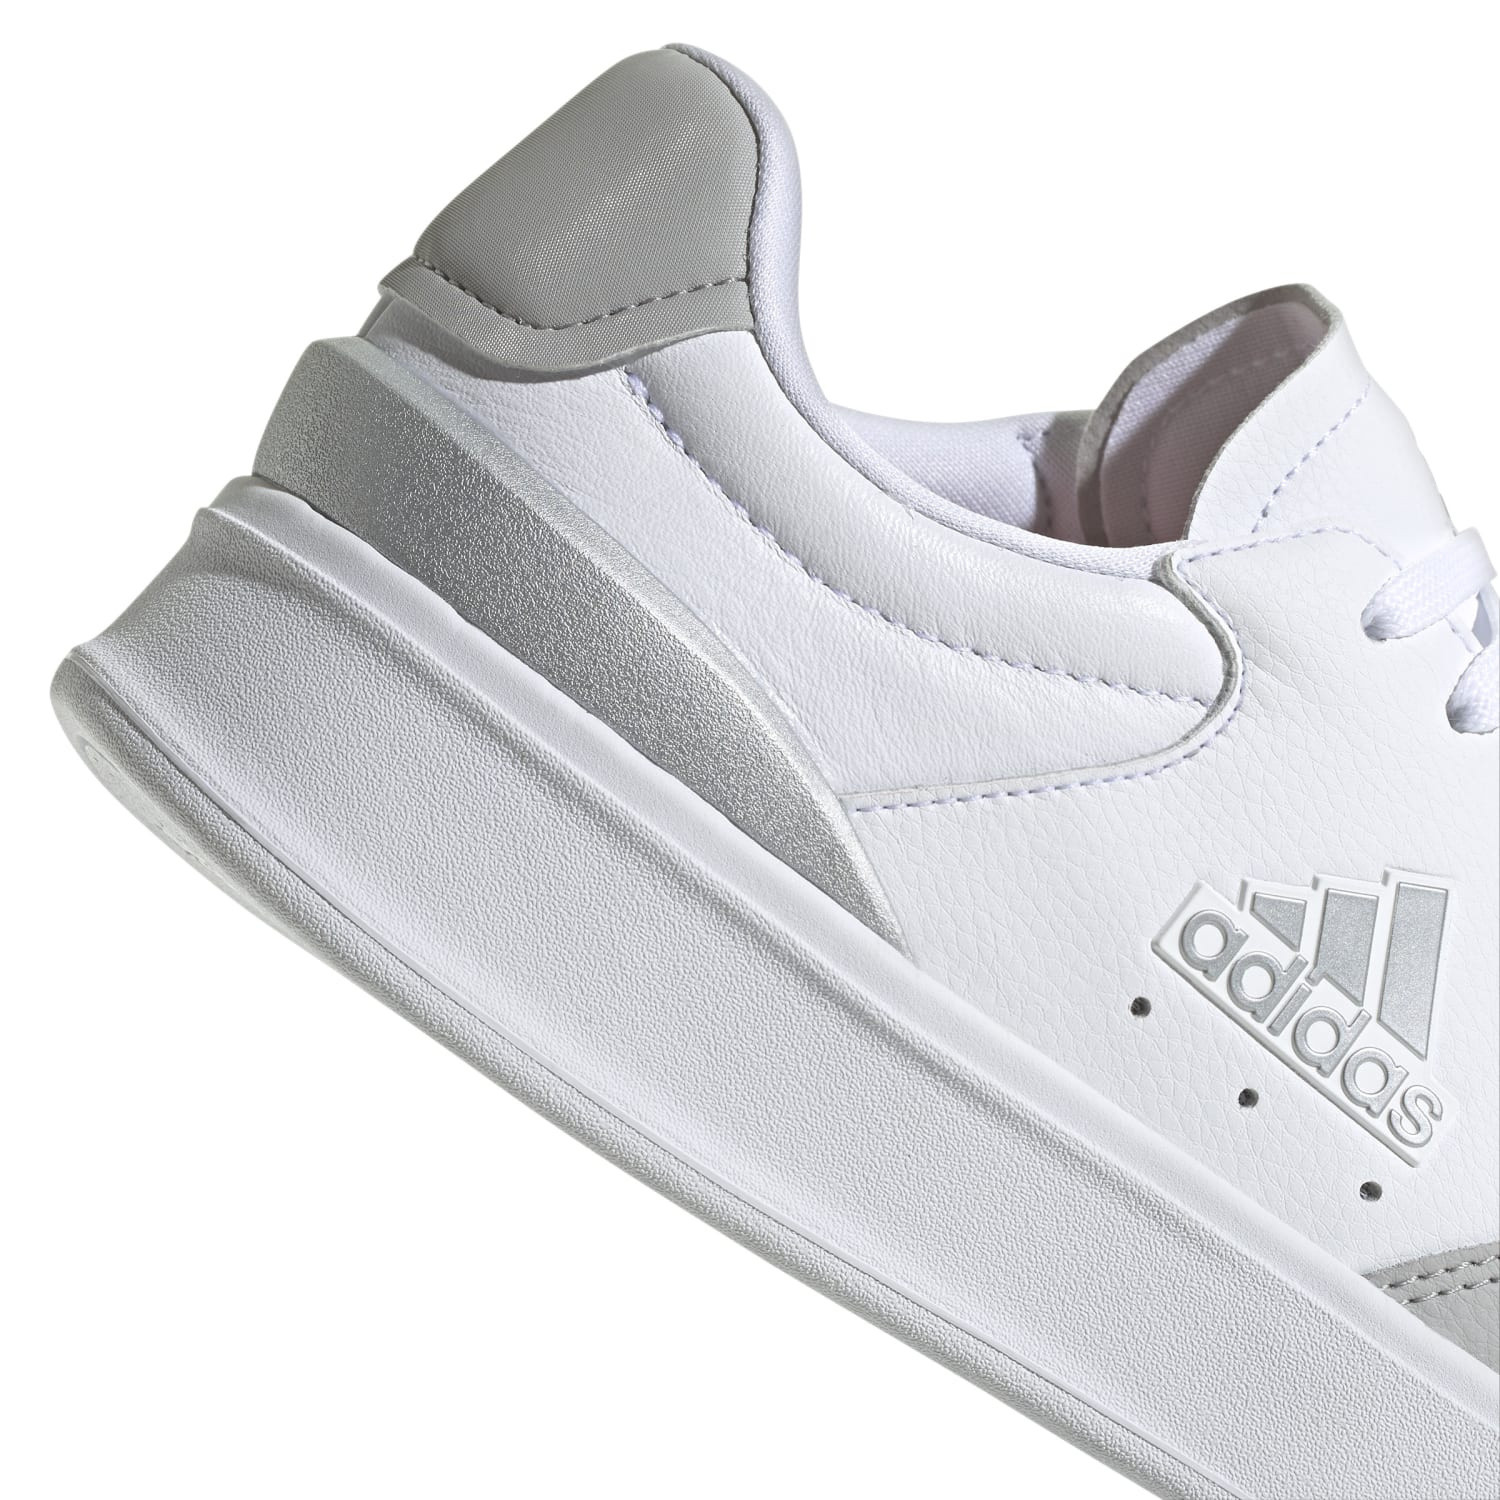 Adidas - Kantana shoes, White, large image number 3